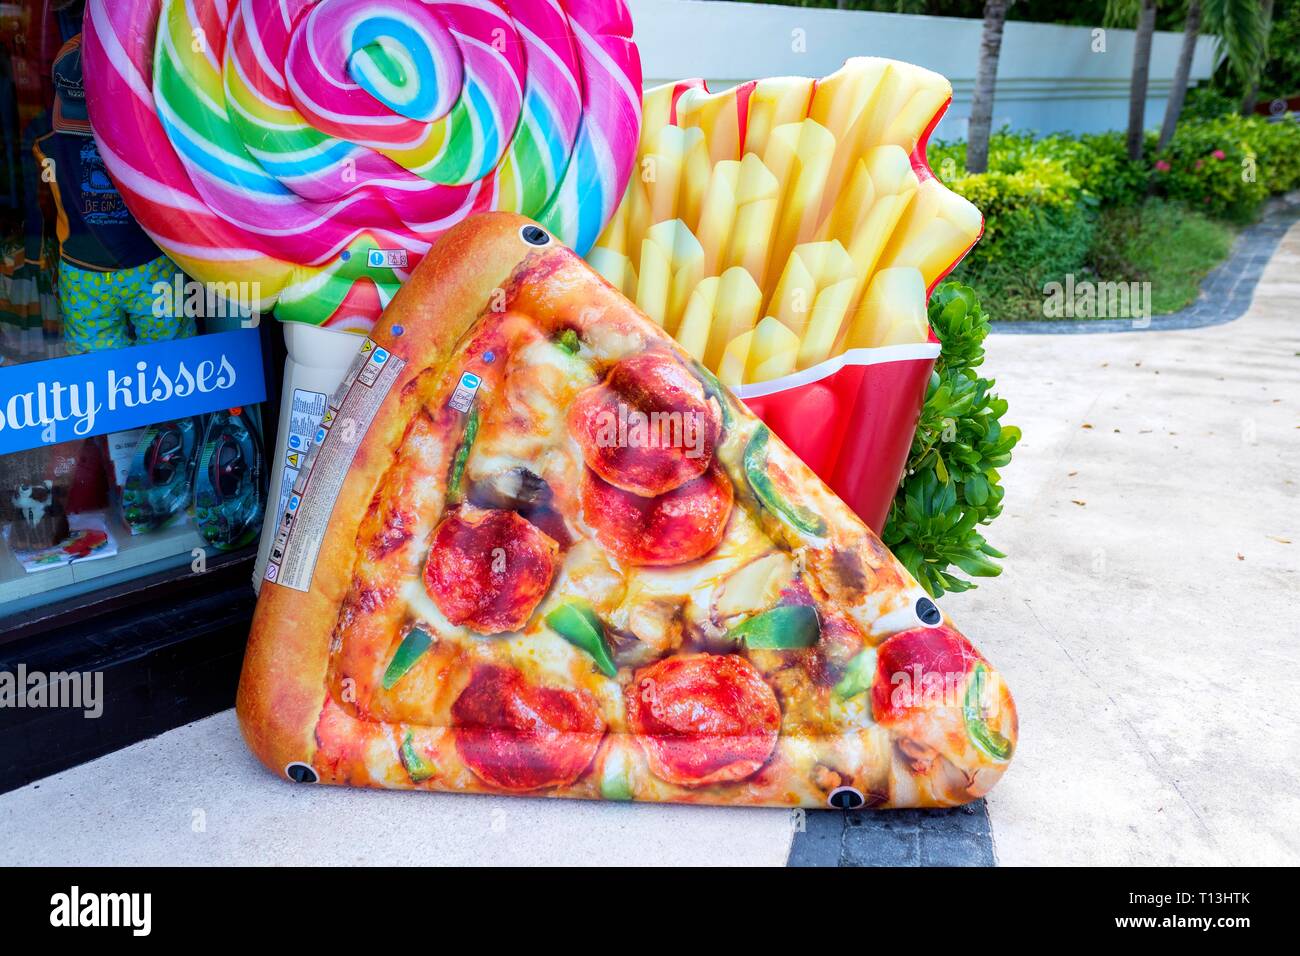 Fast food lumineux et colorés jouets gonflables y compris des pizzas, des frites ou des chips et d'une sucette à l'extérieur d'une boutique de souvenirs dans une jolie plage caribbe Banque D'Images